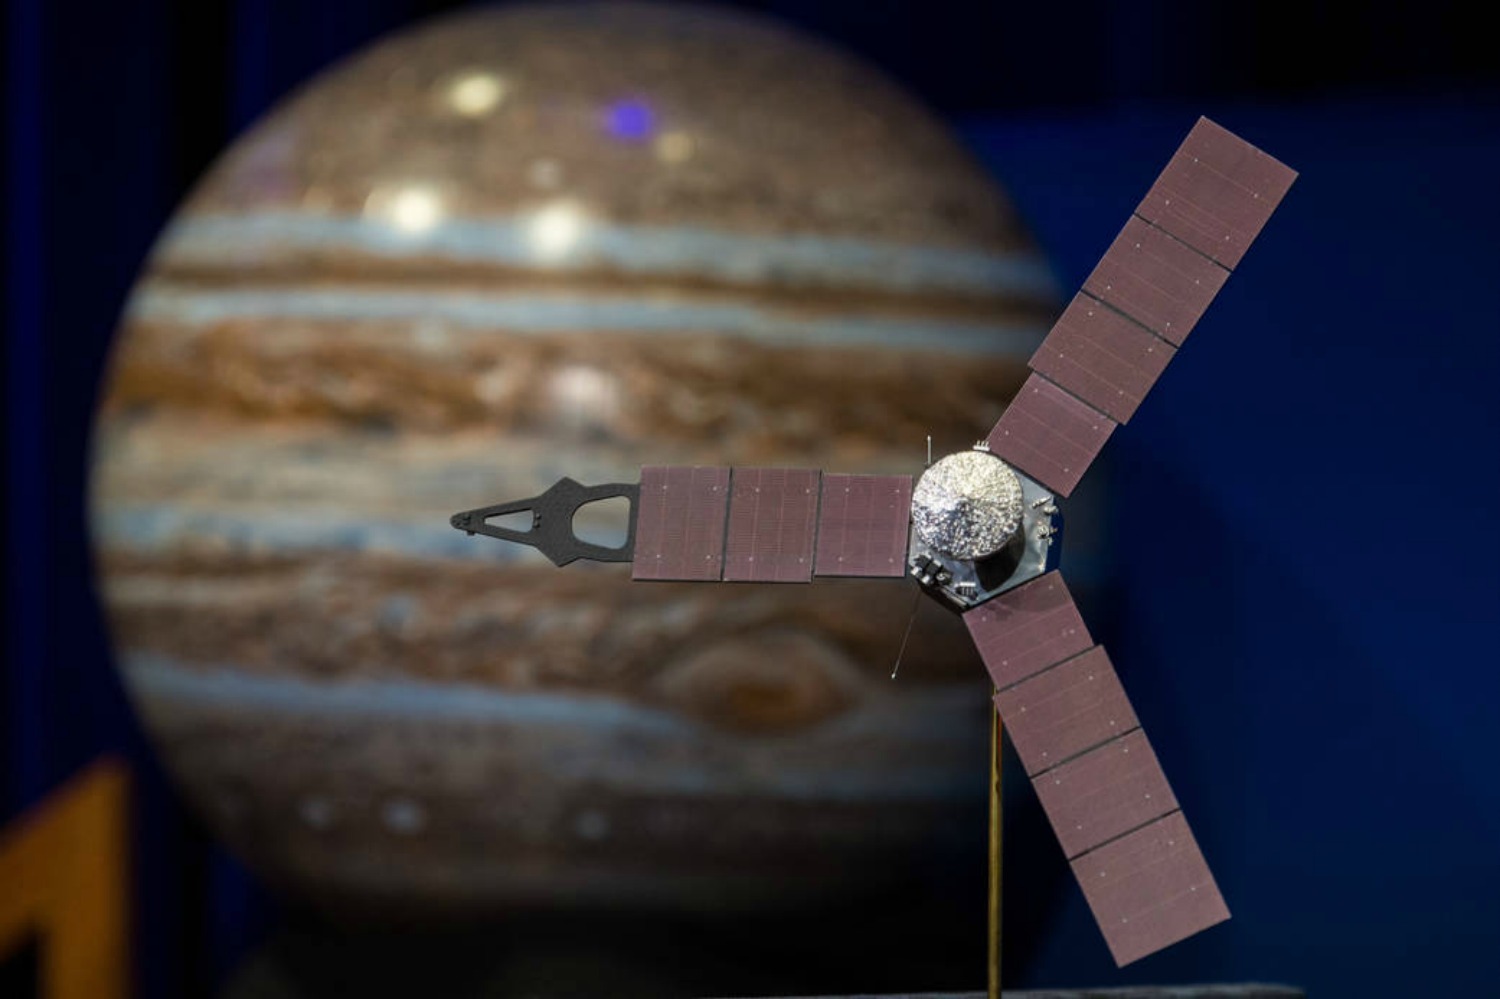 Todo a punto para que la sonda Juno entre en la órbita de Júpiter tras cinco años de viaje espacial